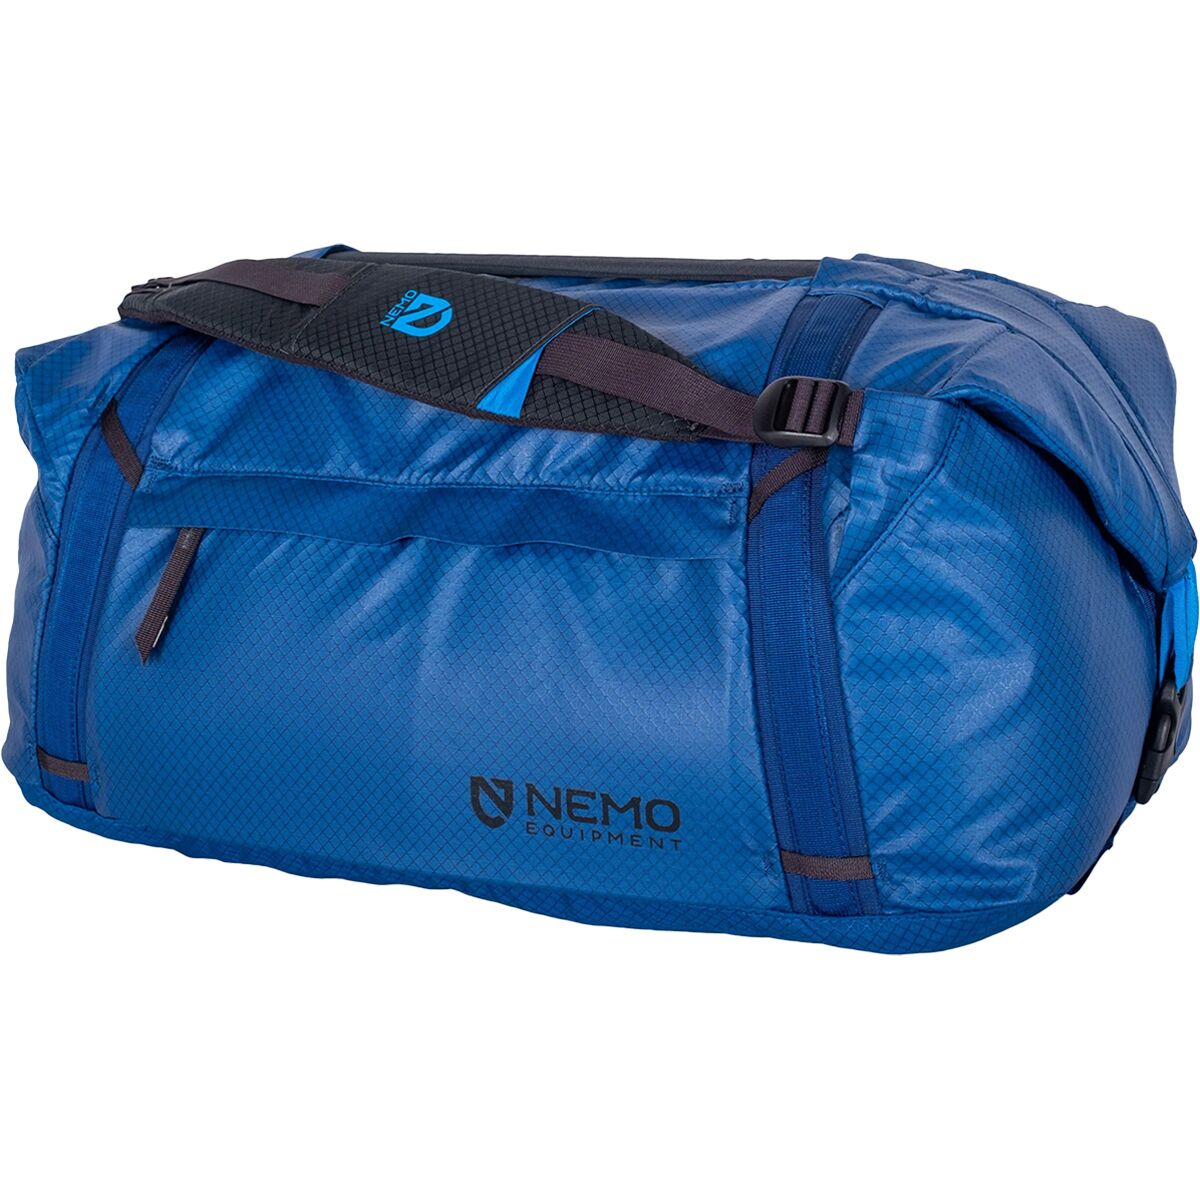 Двойная трансформируемая спортивная сумка объемом 55 л Nemo Equipment Inc., цвет lake